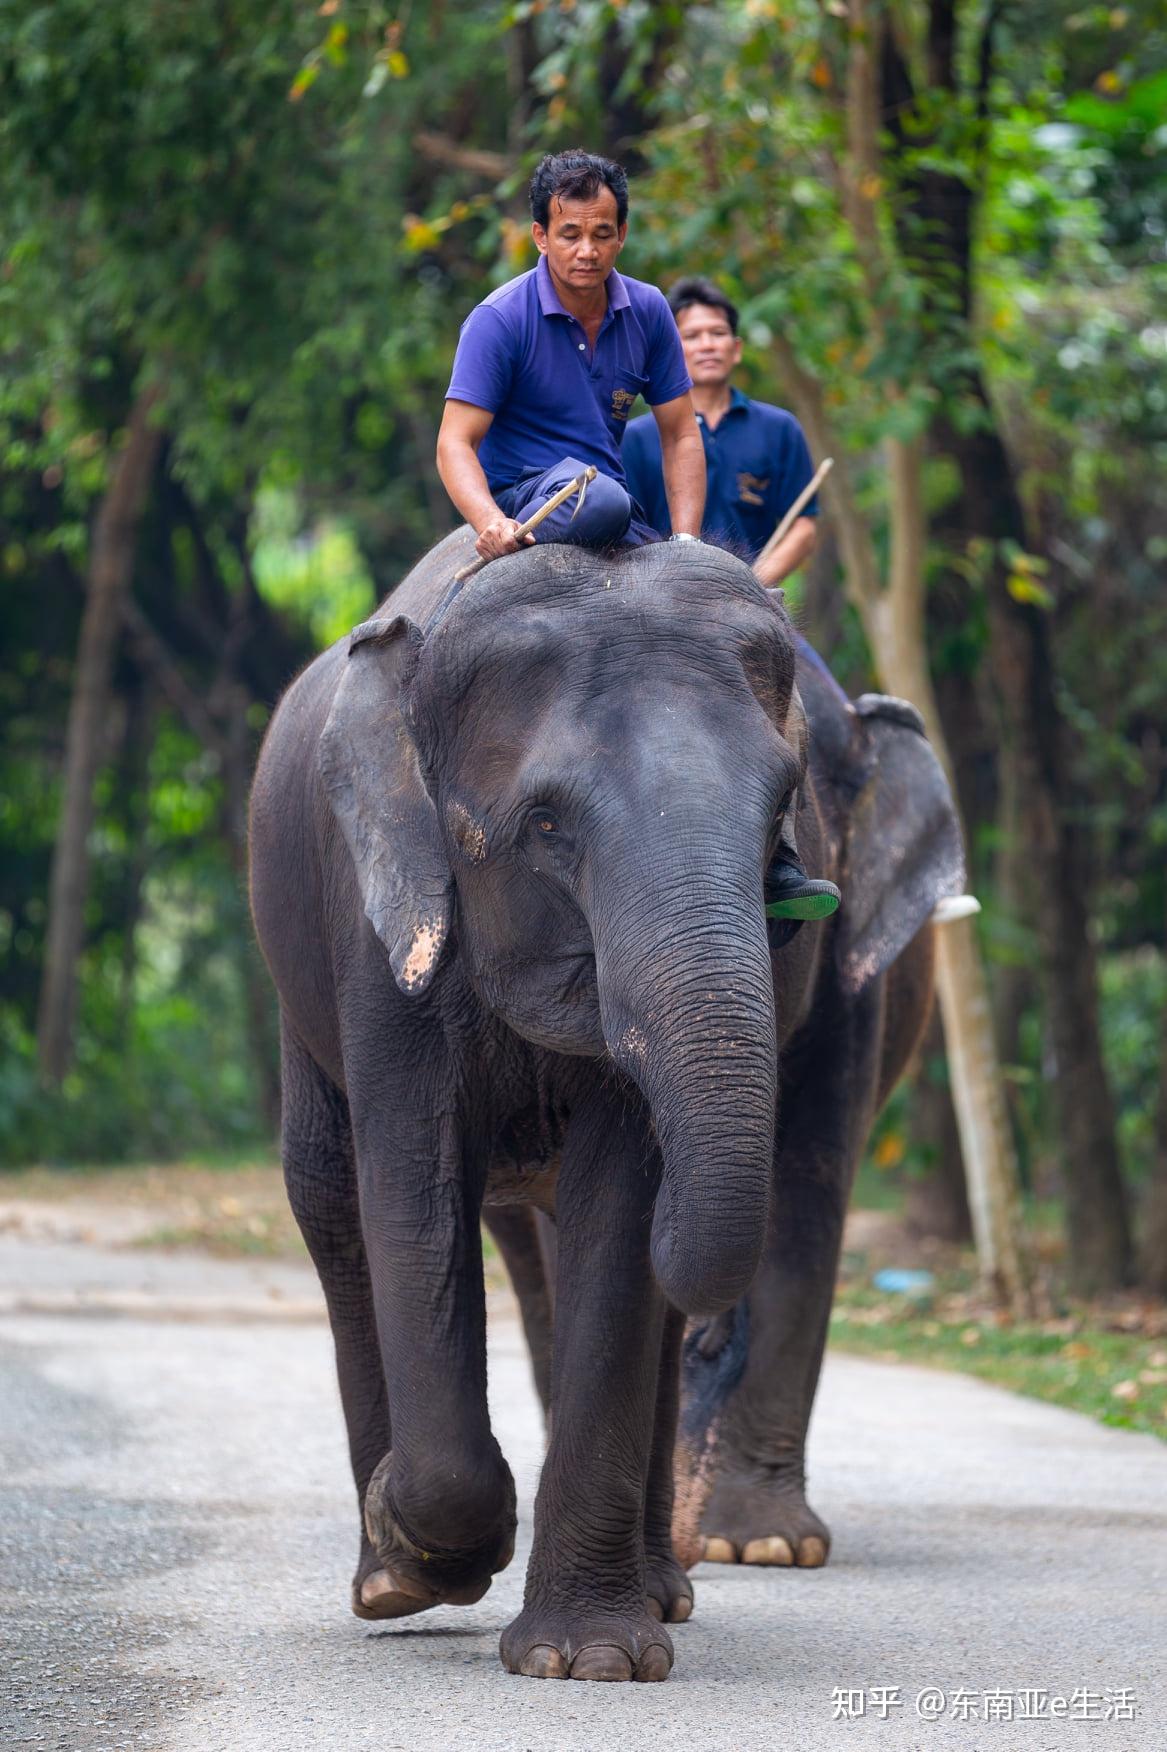 泰国旅游业遭遇重创,春武里动物要出售大象!